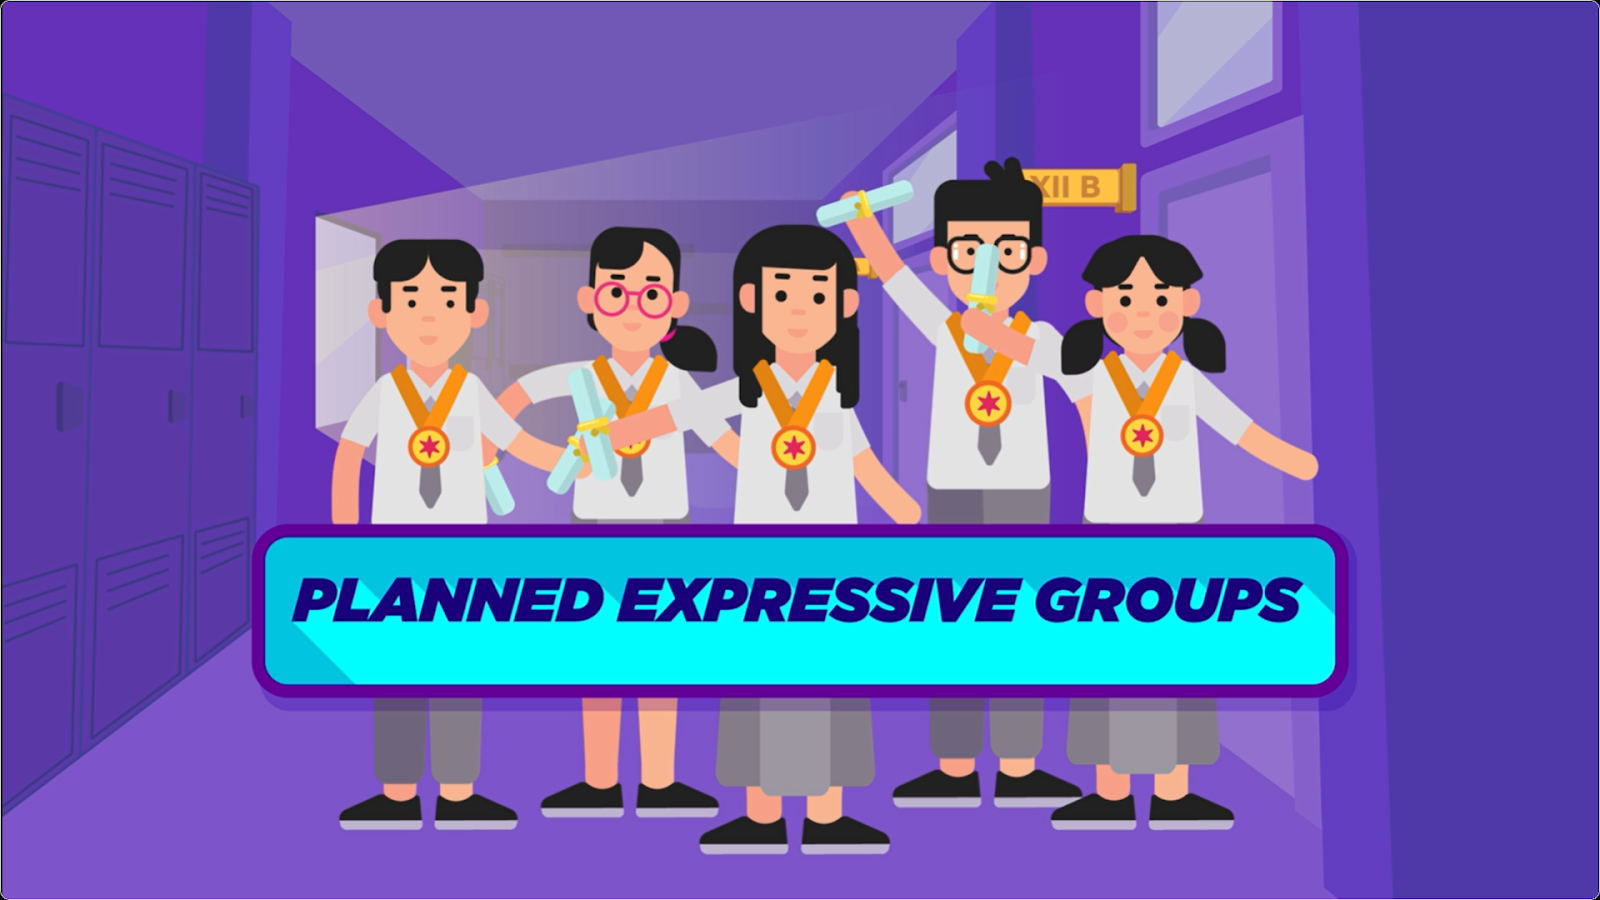 Planned expressive groups adalah kerumunan yang memiliki tujuan yang sama namun pusat perhatiannya tidak hanya satu.